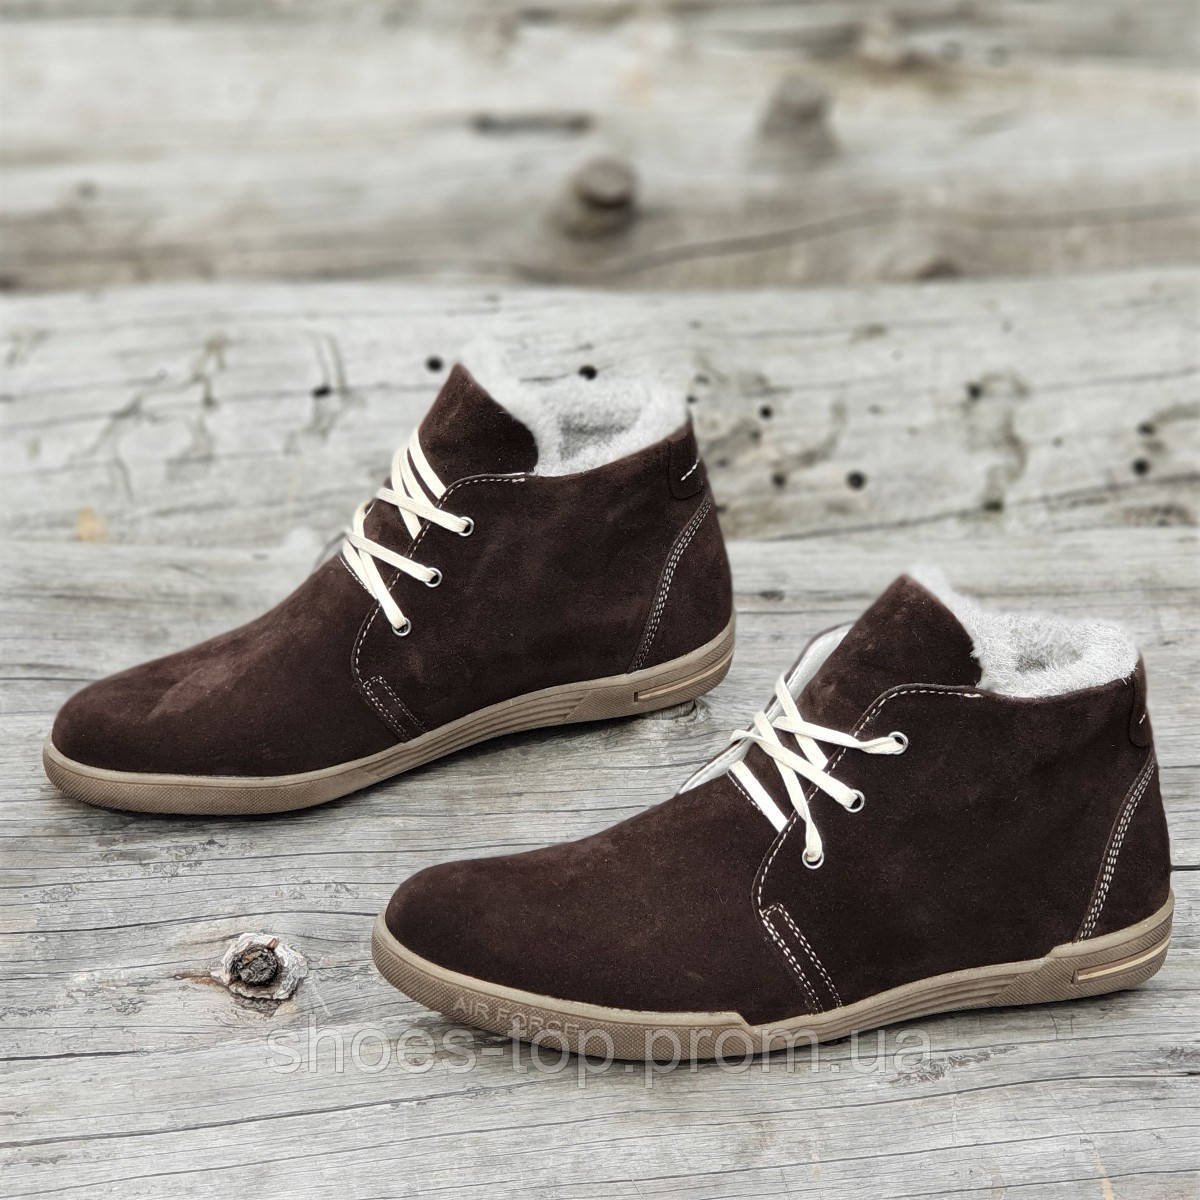 

Зимние мужские классические полуботинки ботинки замшевые на шнурках и молнии коричневые стильные (Код: Ш1267a), Коричиневый